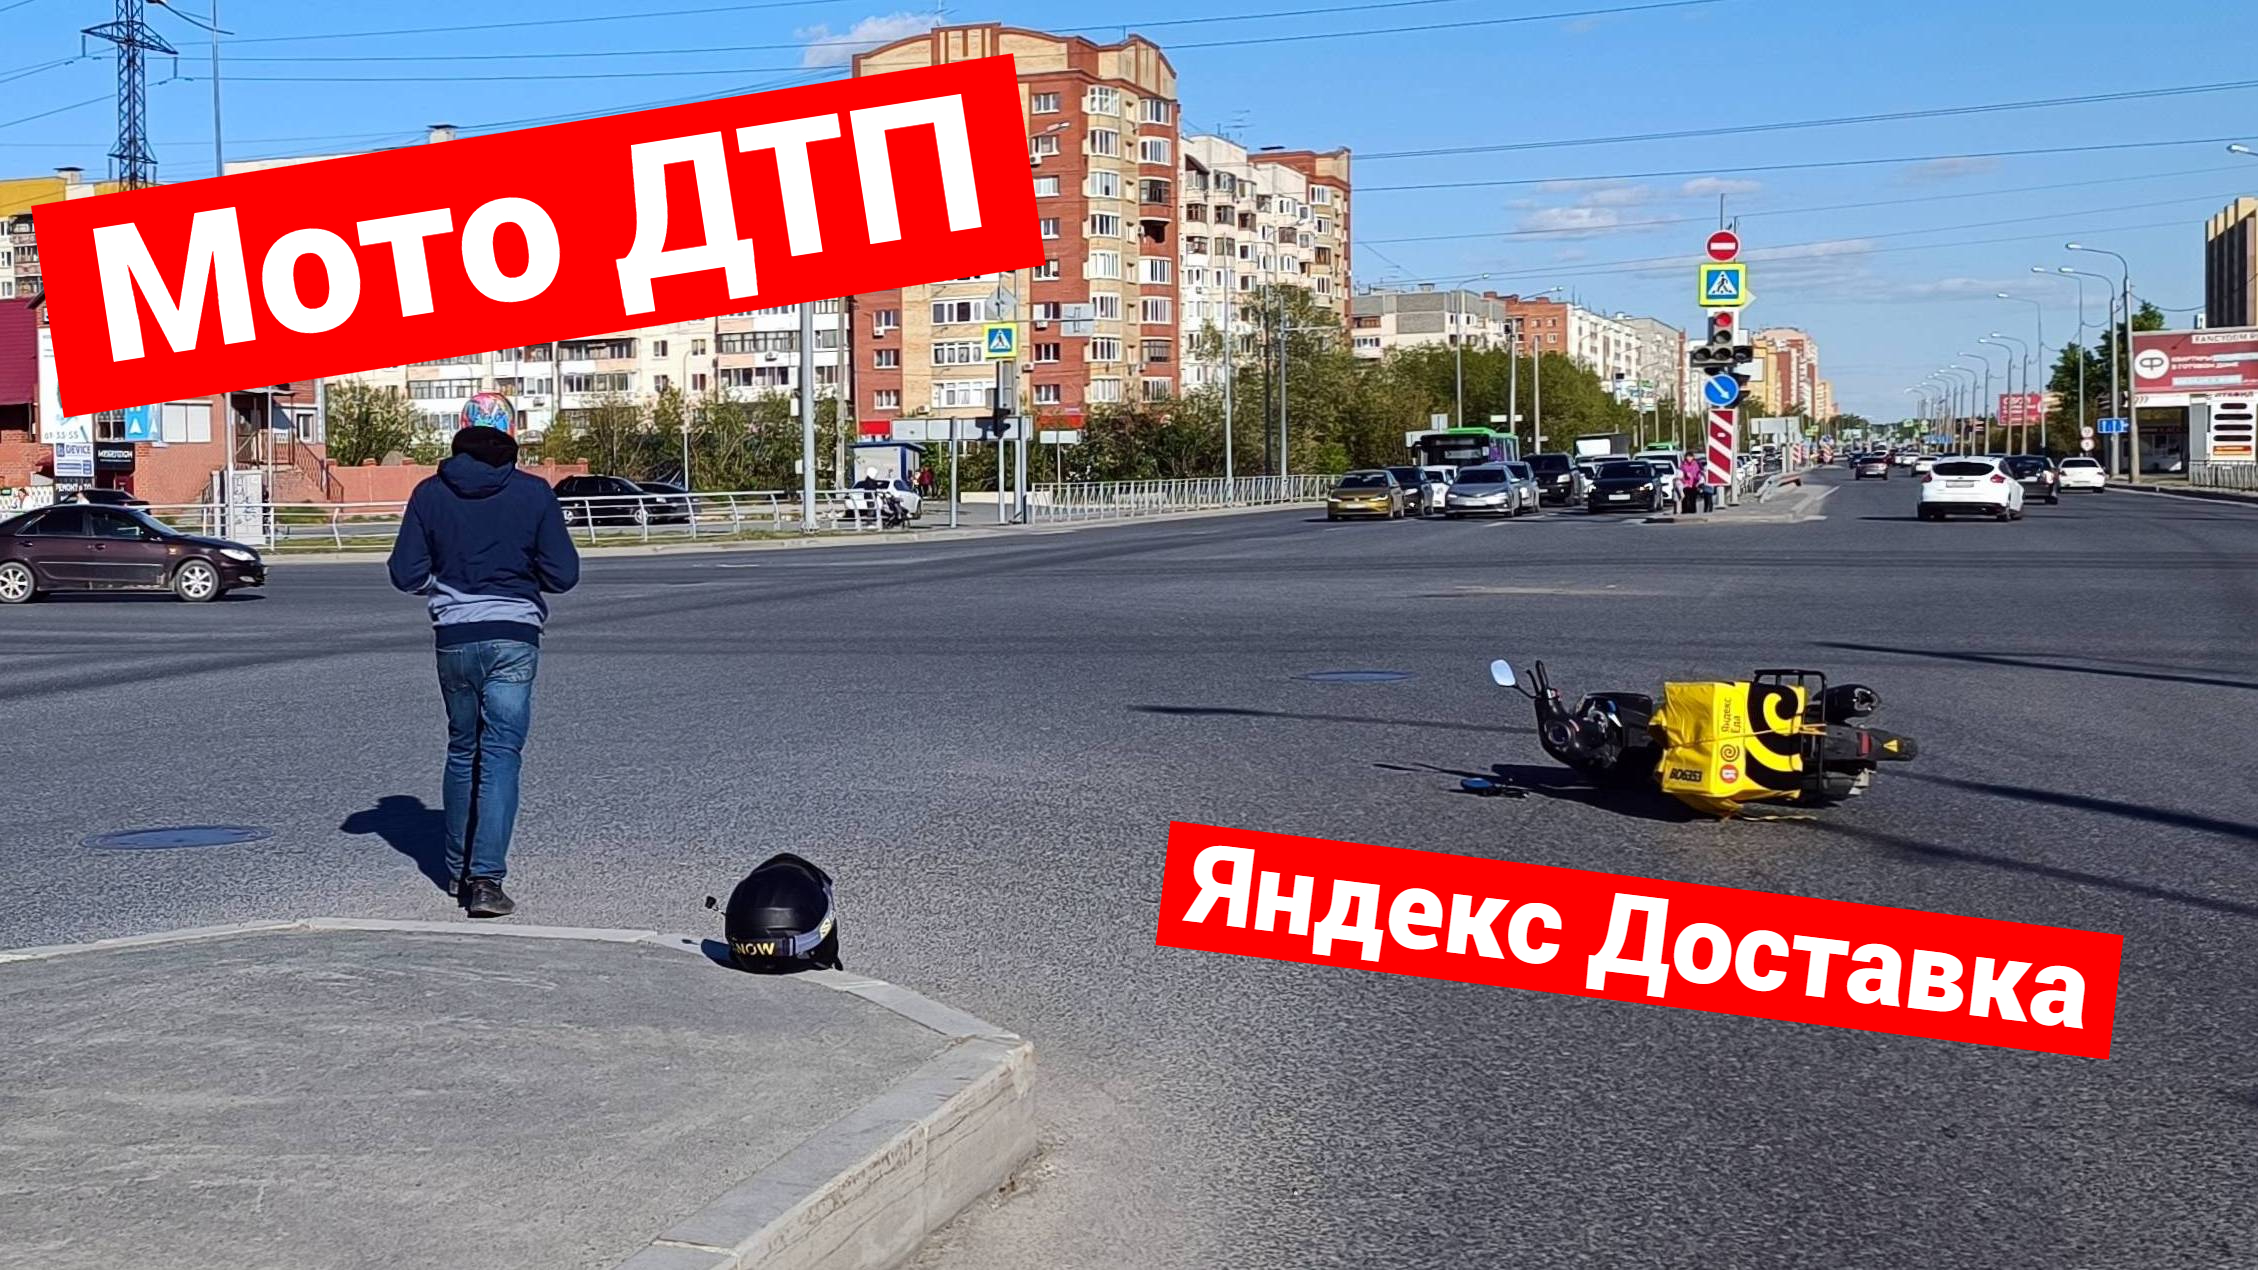 Мото ДТП я Яндекс Доставкой